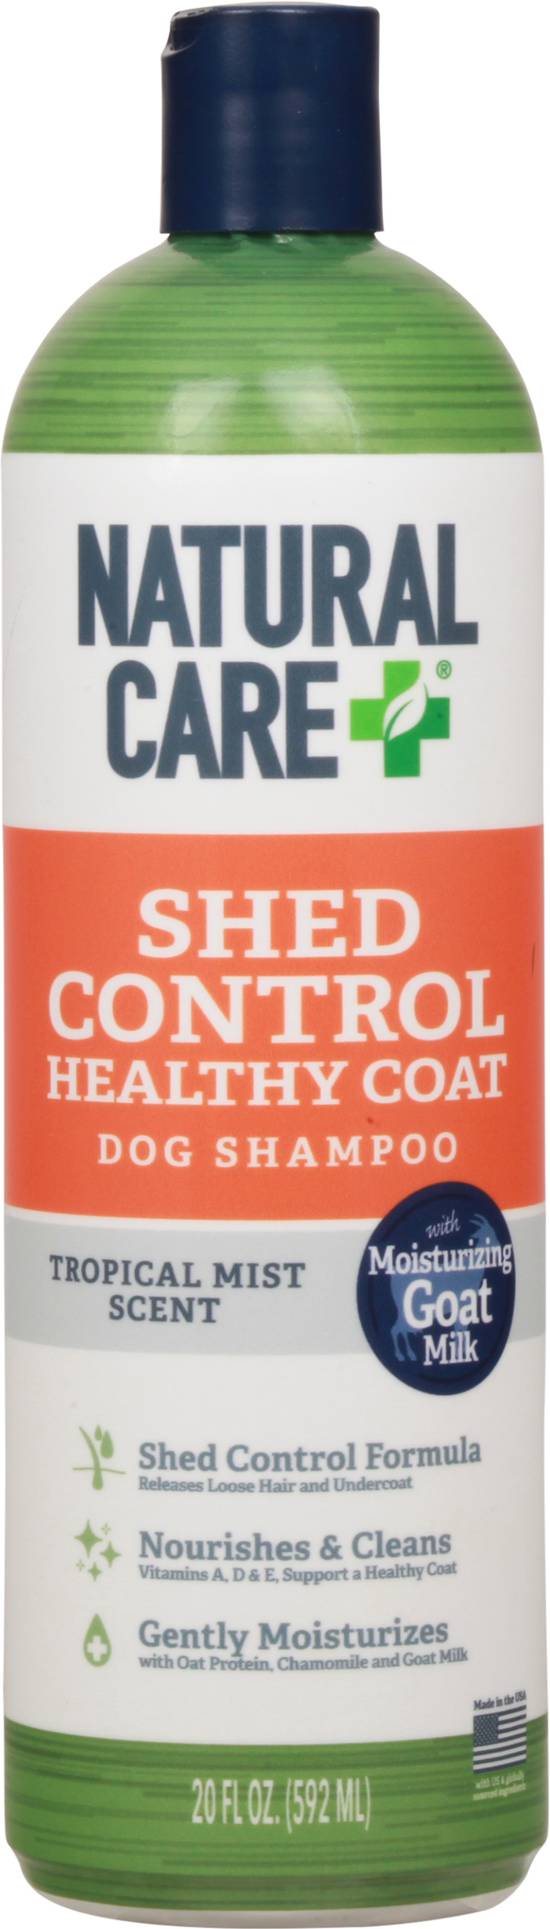 Natural Care + Dog Shampoo (20 oz)